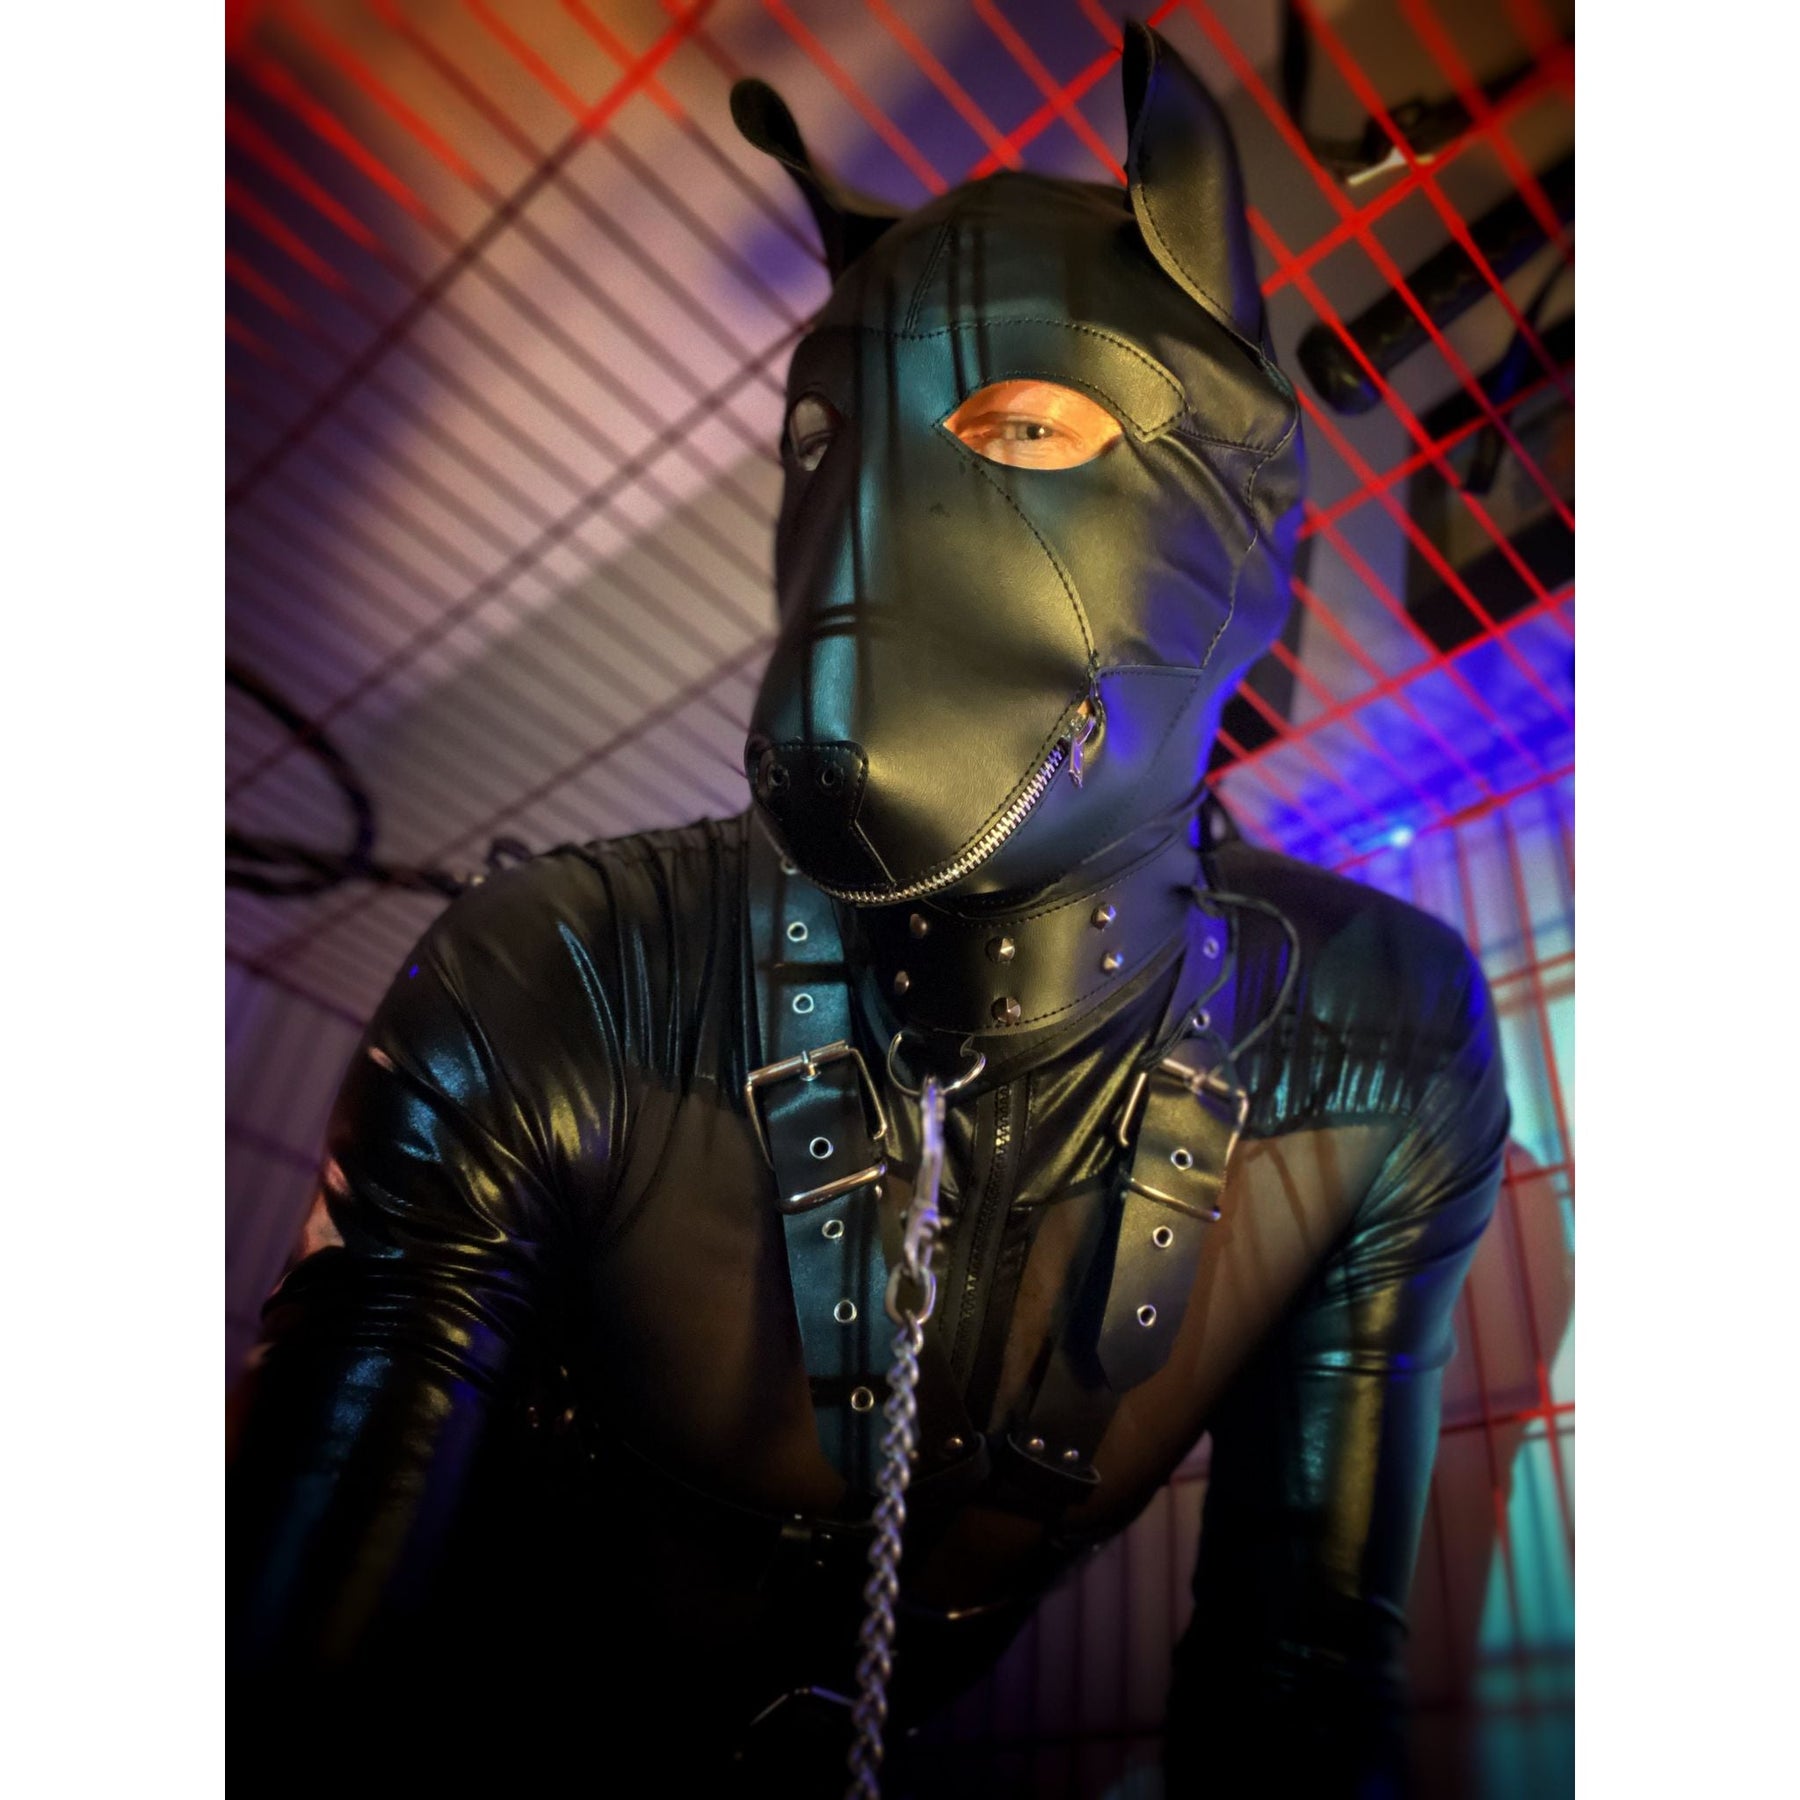 Faux Leather Dog Mask